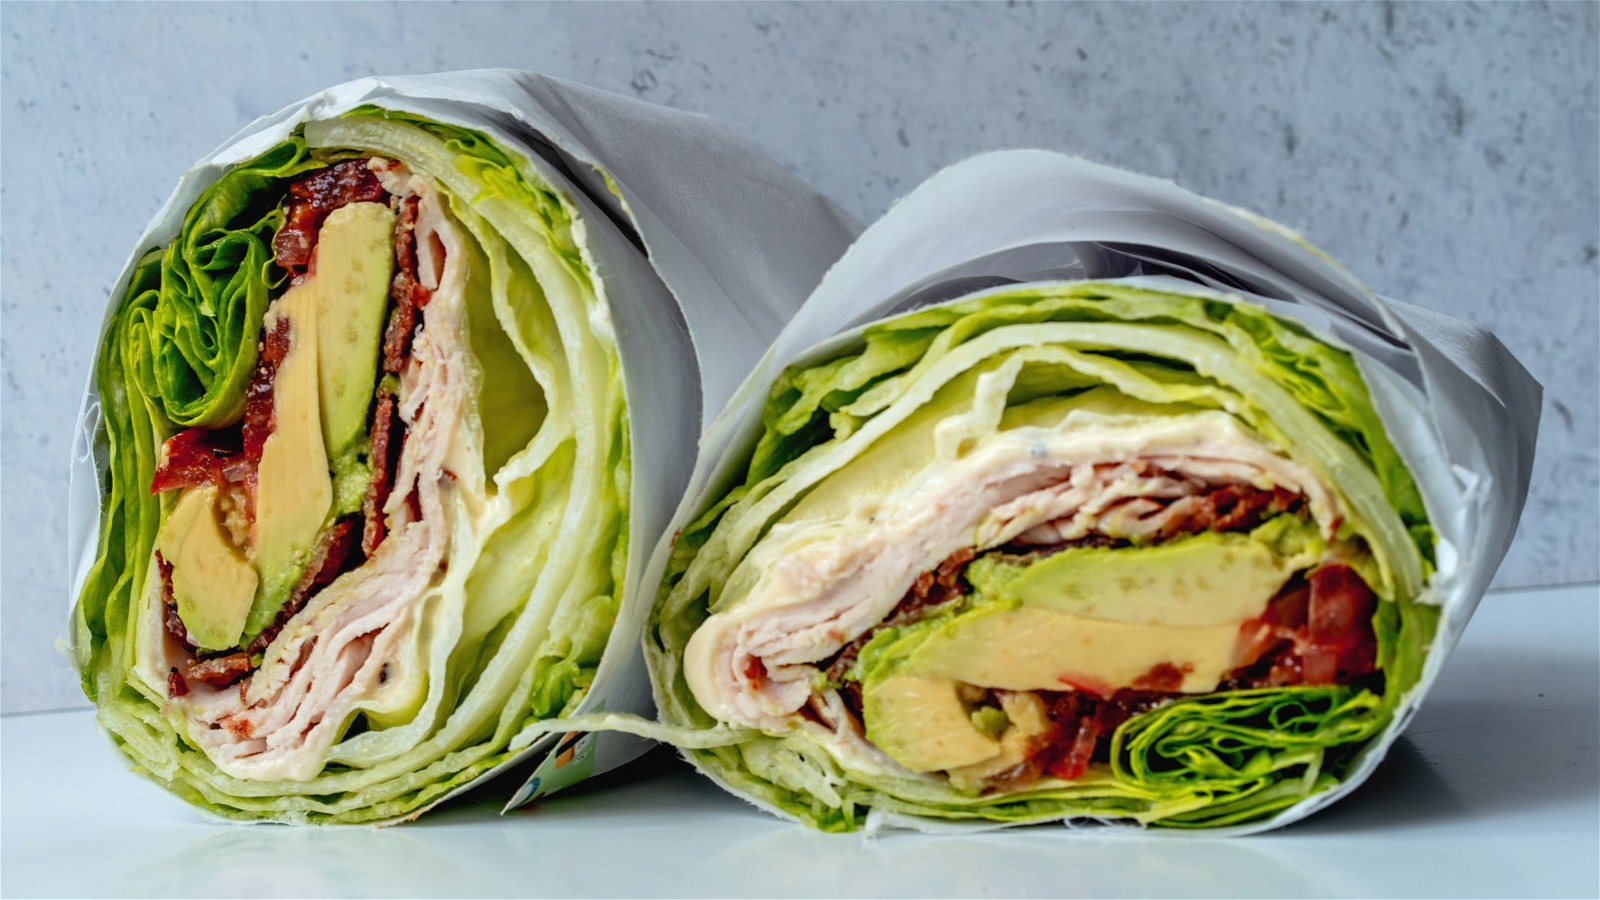 Image of Turkey Club Lettuce Wrap